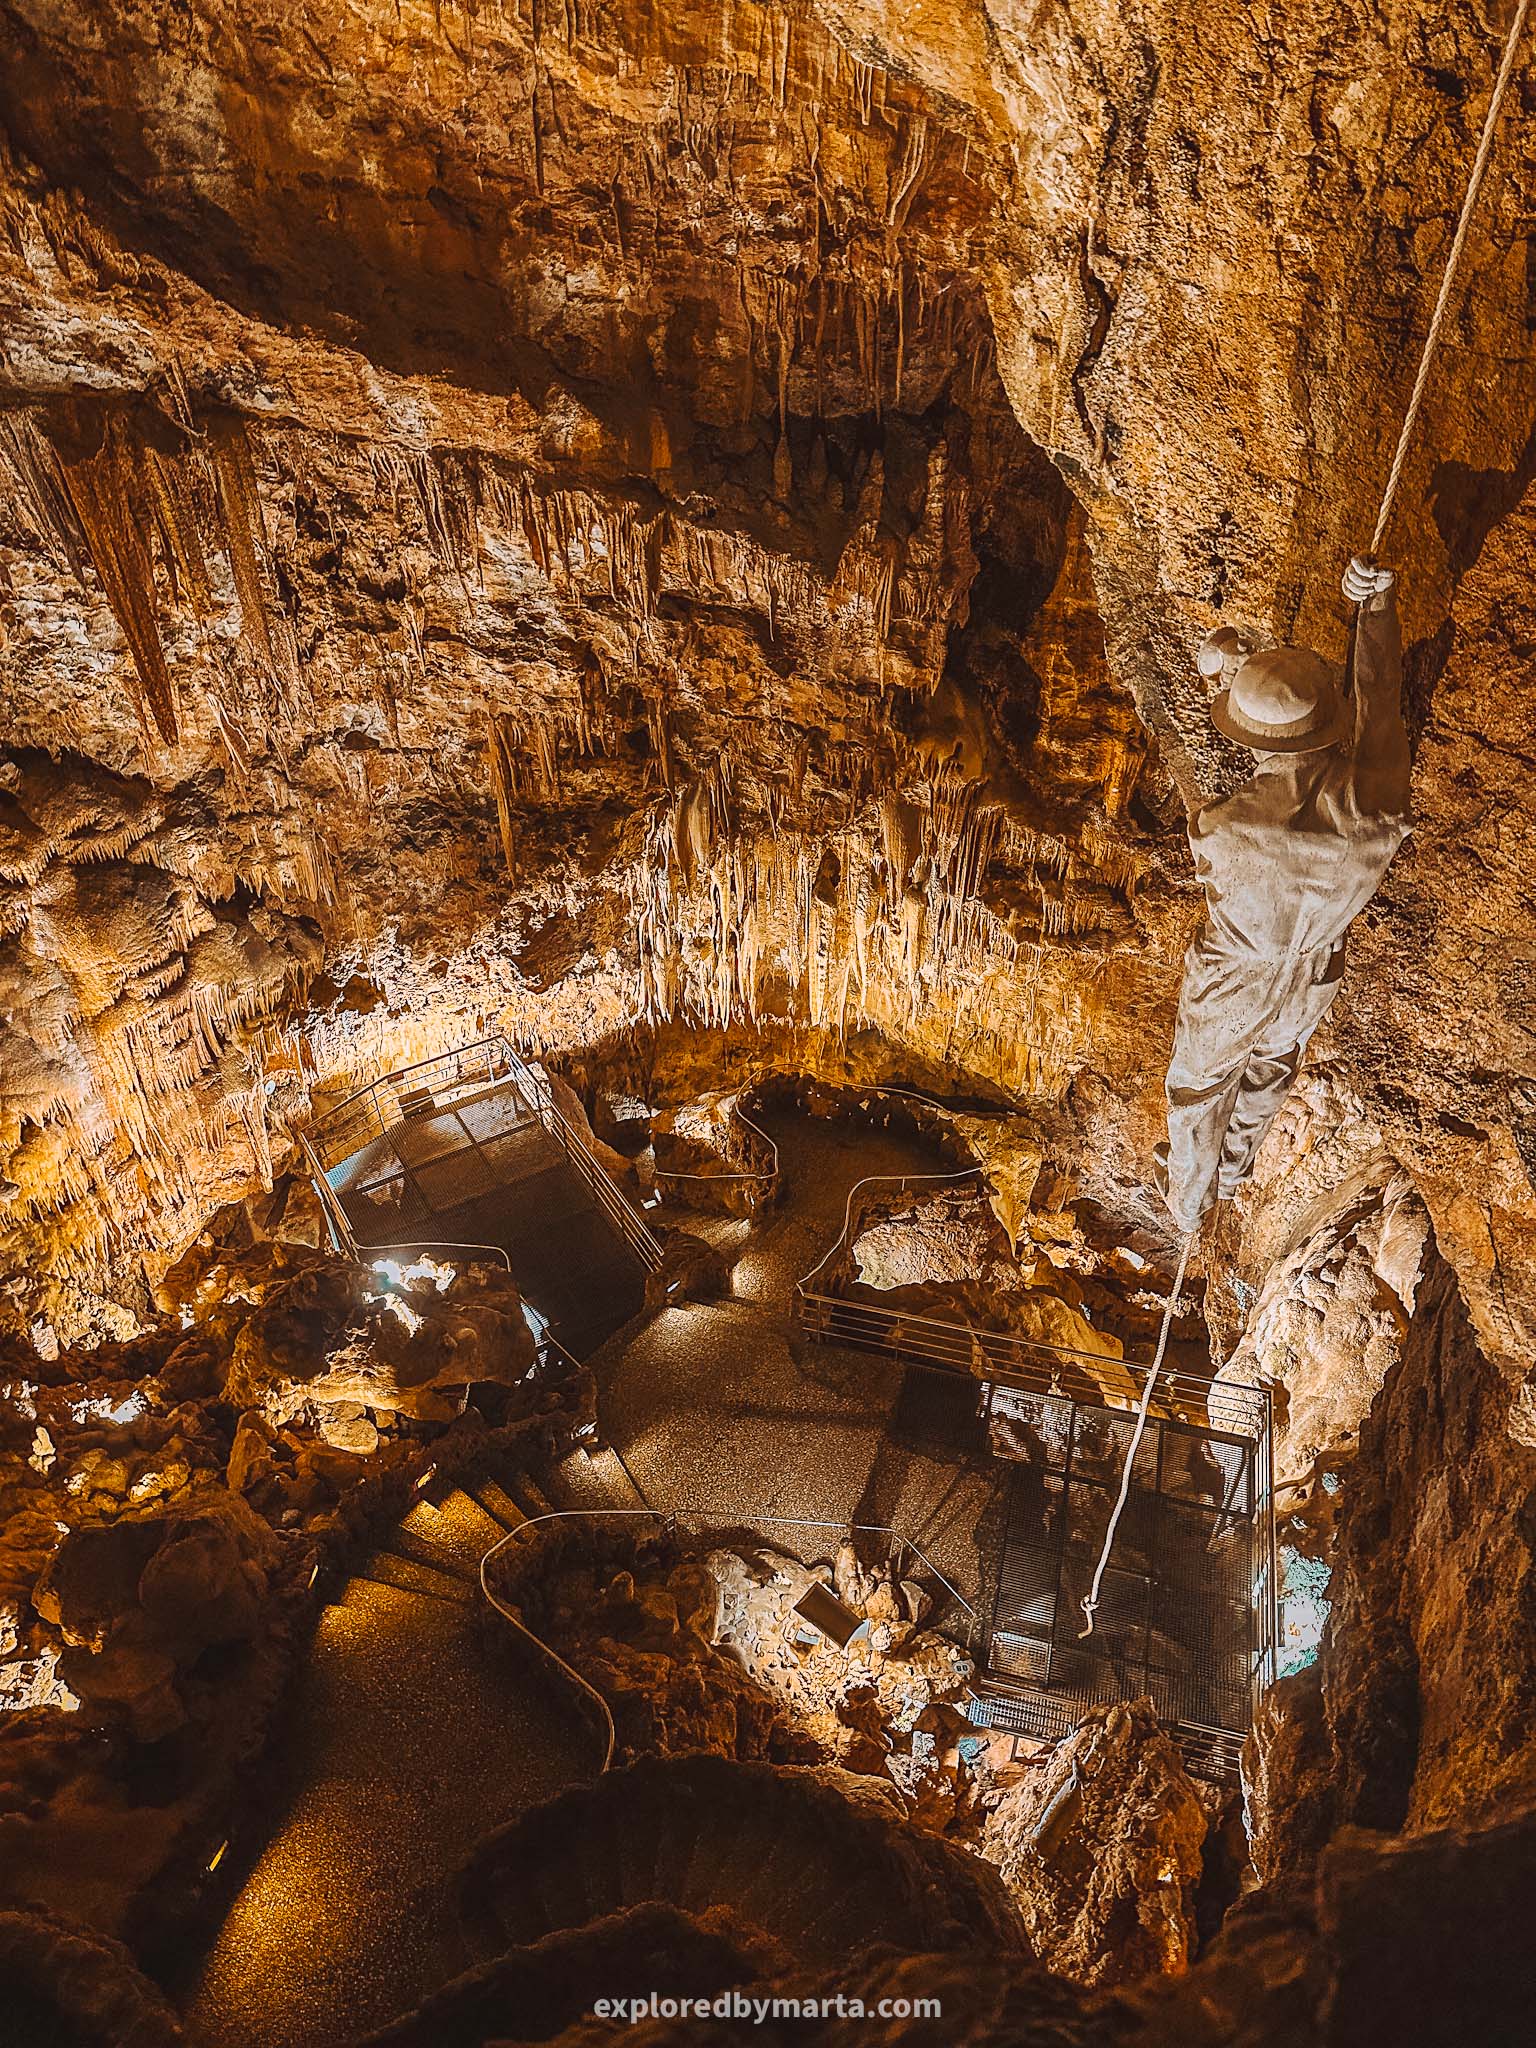 Grutas de Mira de Aire limestone caves in Portugal